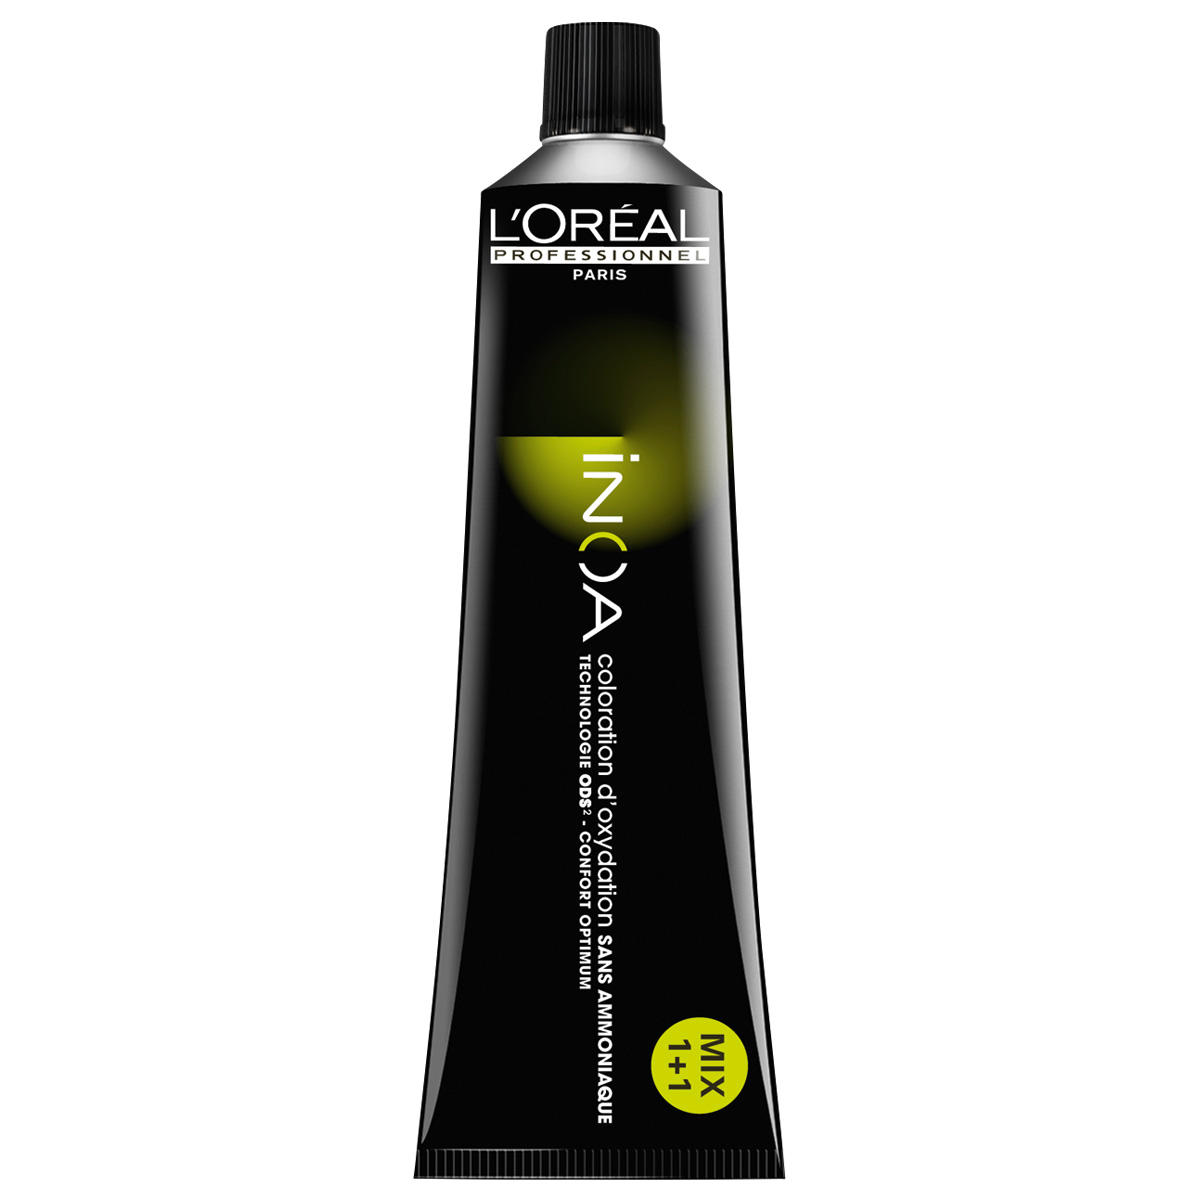 L'Oréal Professionnel Paris Coloration 7.23 Medium Blond Irisé Goud, Tube 60 ml - 1